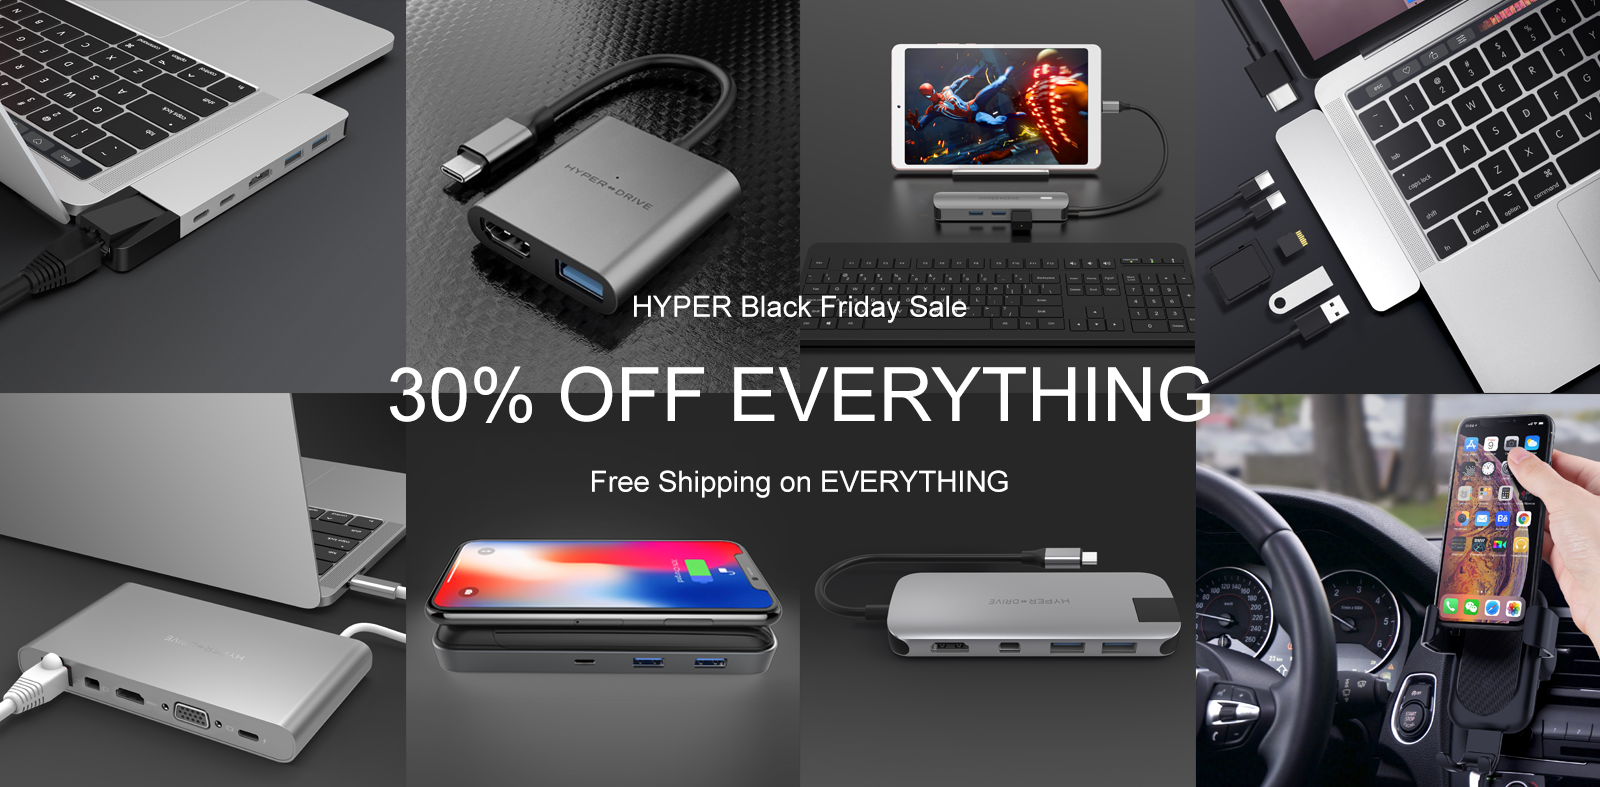 Apple Black Friday best deals: Macs, iPad, iPhone, more - 9to5Mac